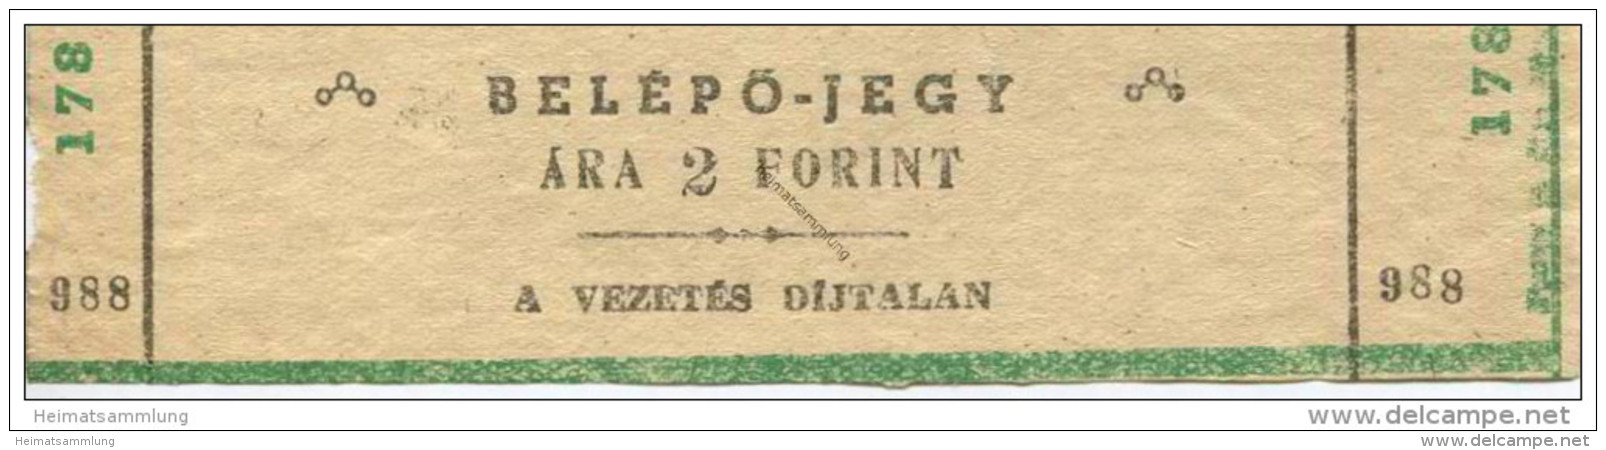 Ungarn - Belepojegy - A Vezetes Dijtalan - Ticket Eintrittskarte - Eintrittskarten